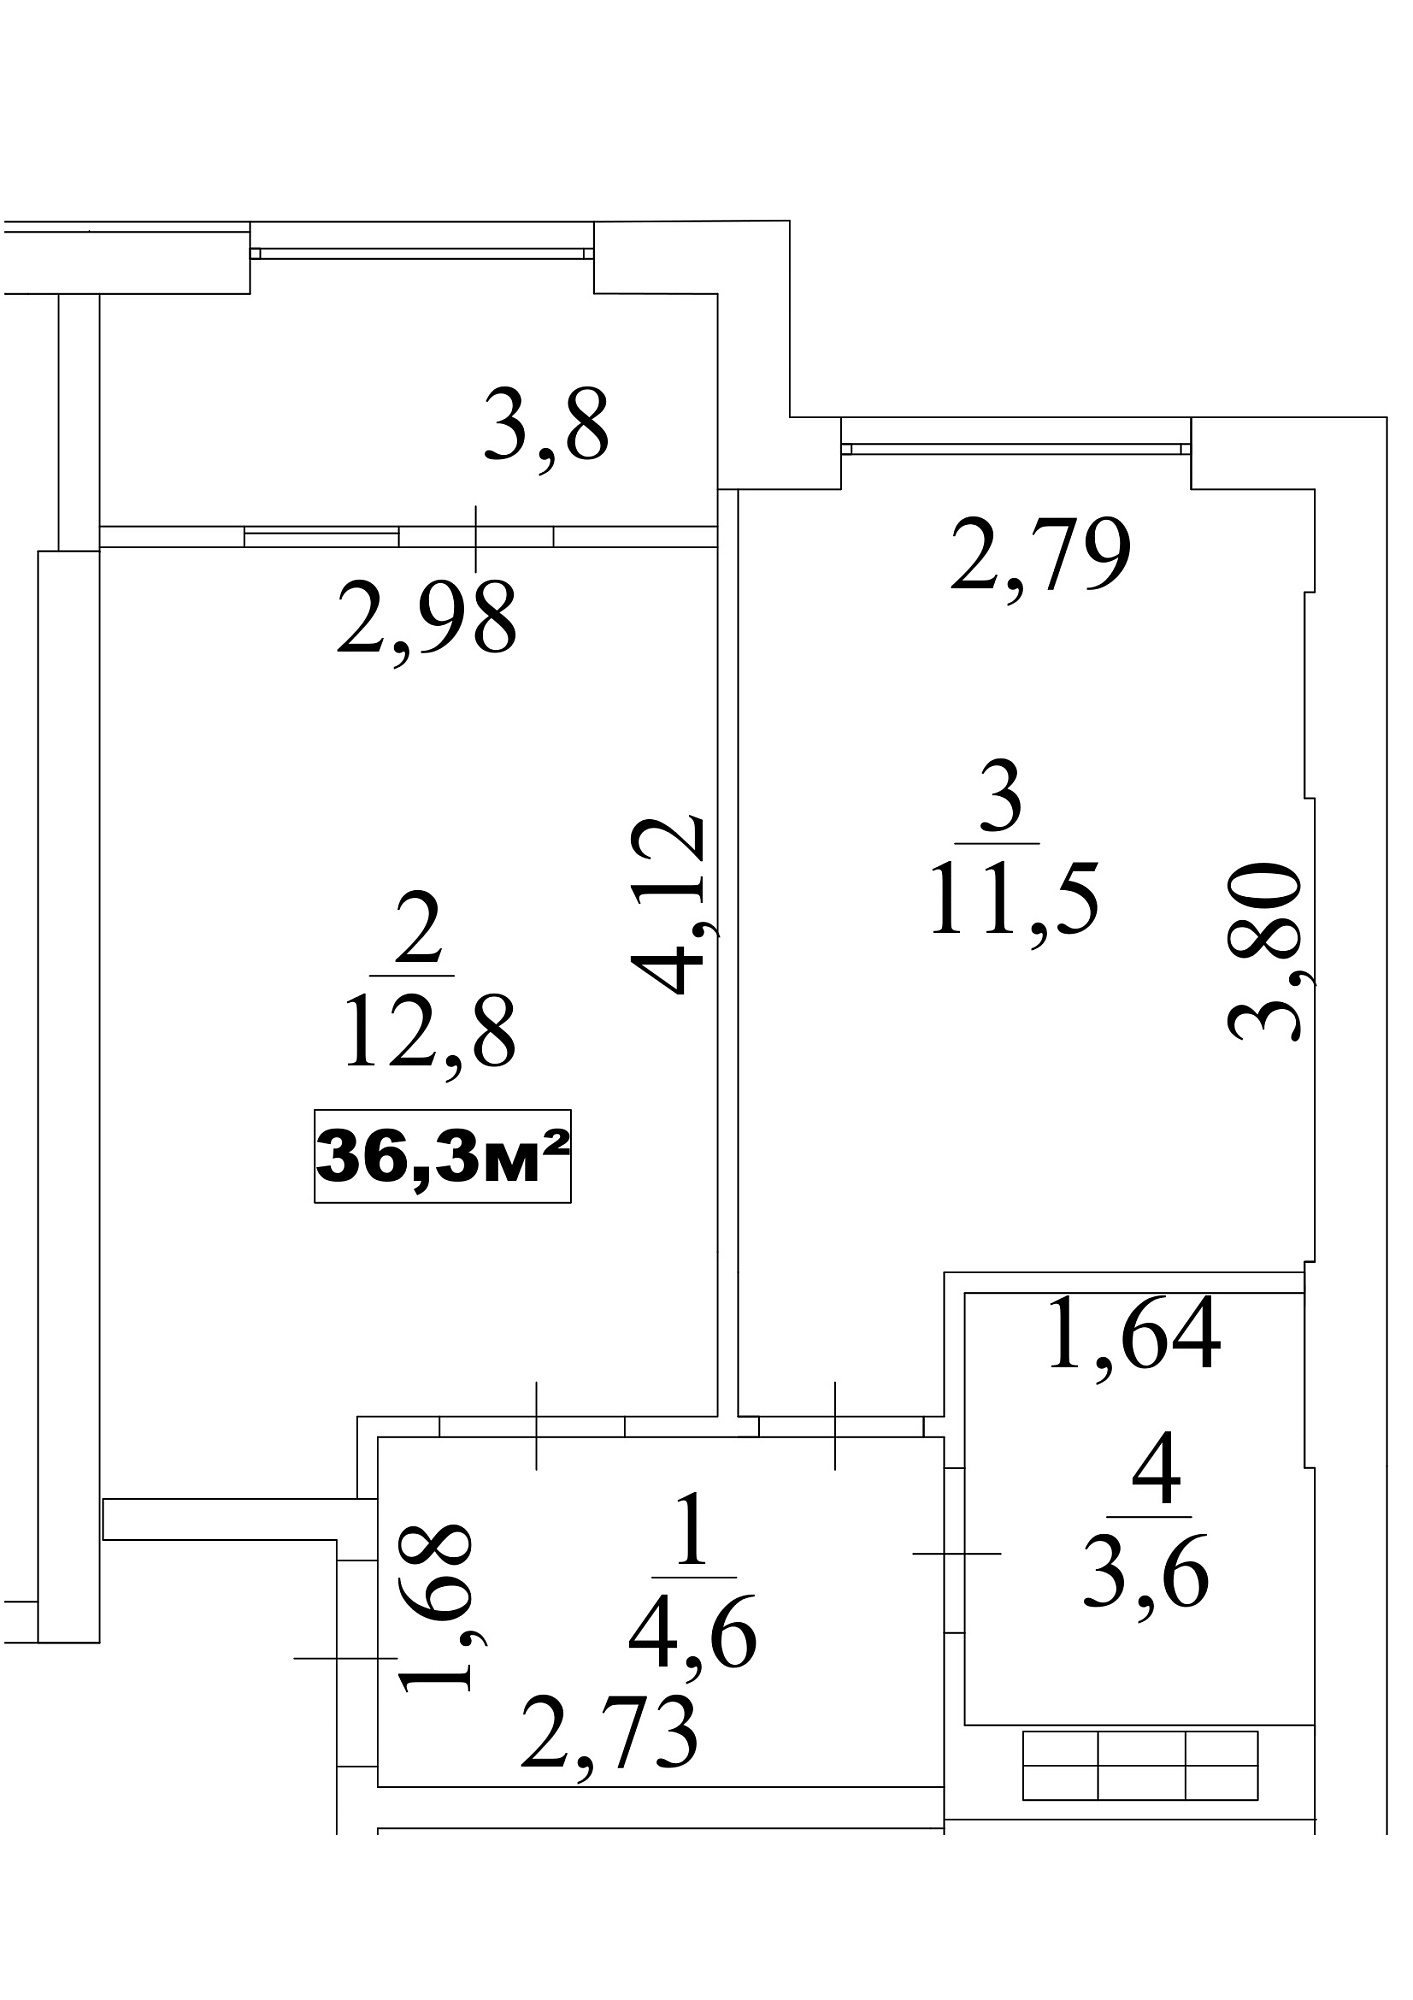 Планировка 1-к квартира площей 36.3м2, AB-10-06/0052б.